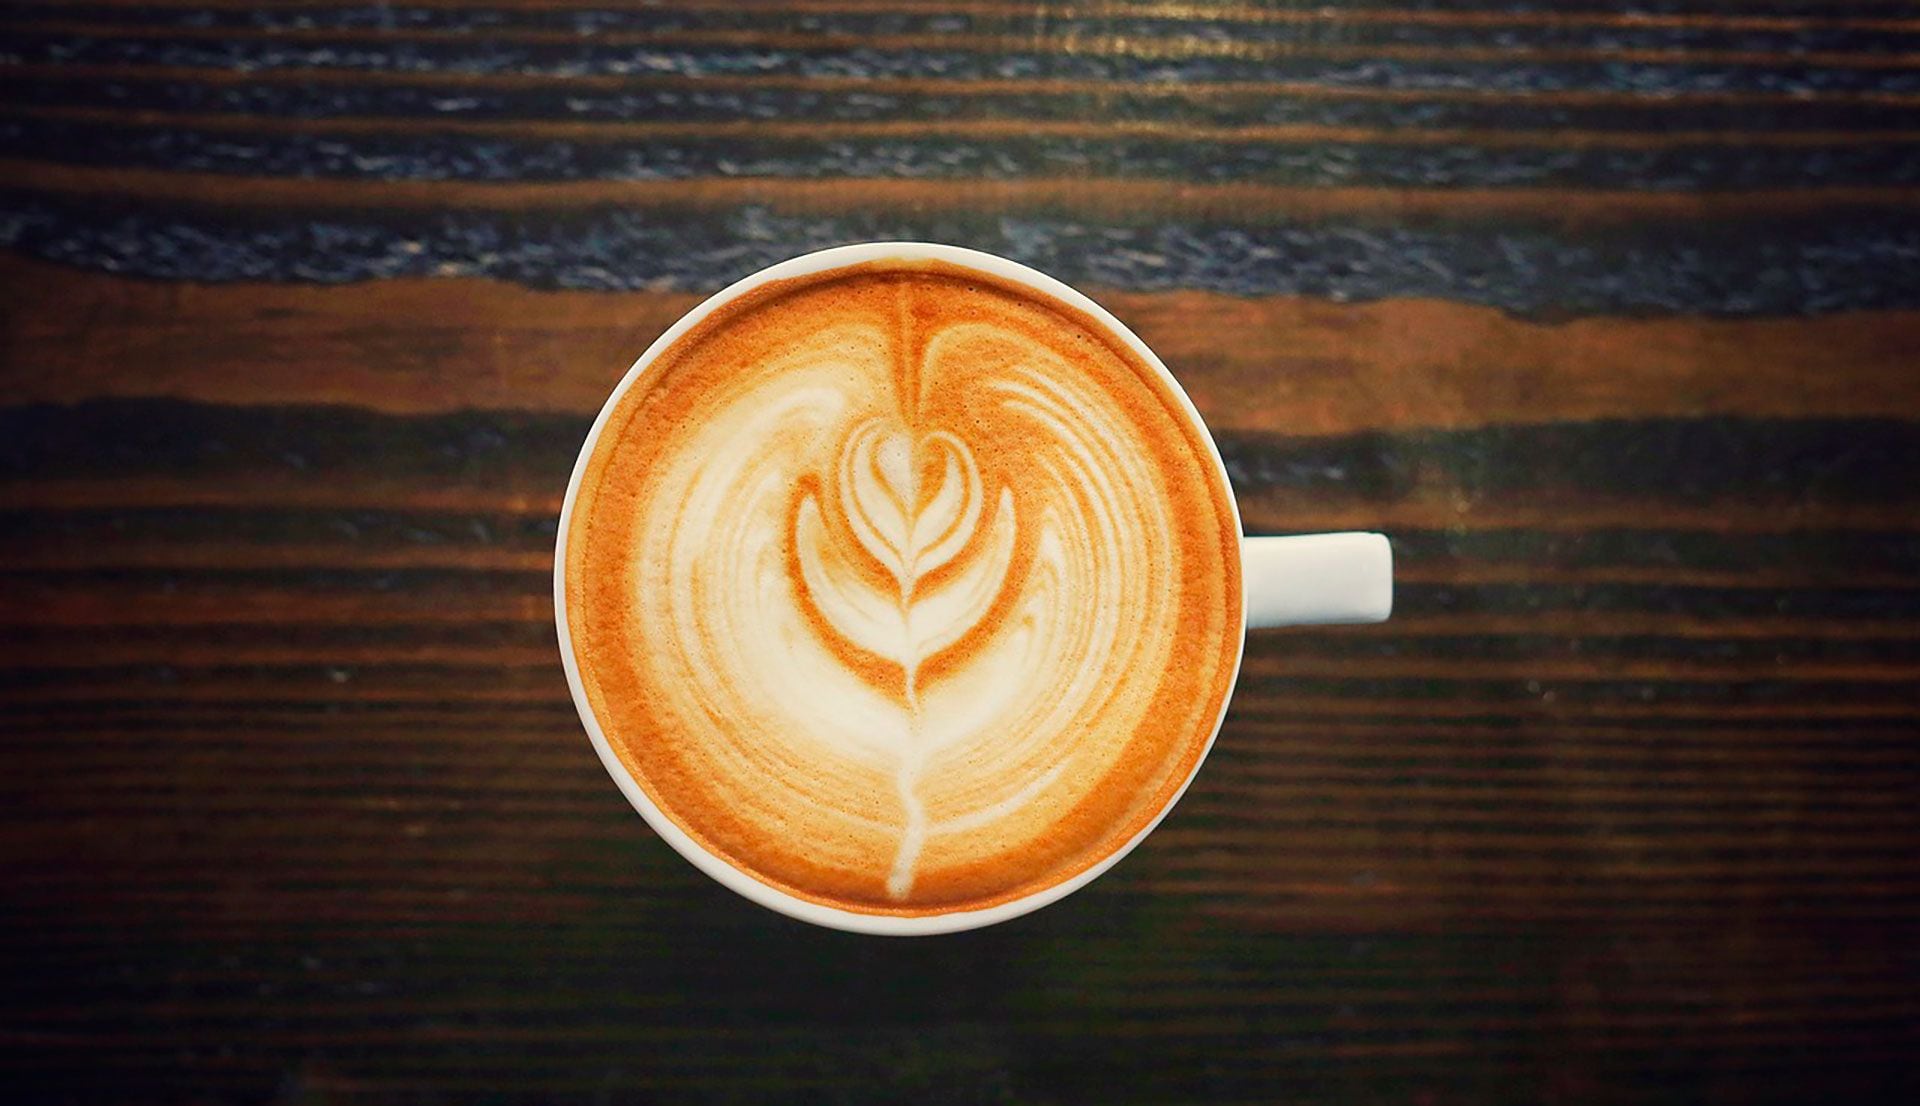 La precisión, paciencia y conocimiento profundo de los ingredientes son esenciales para el arte del latte (Pixabay)